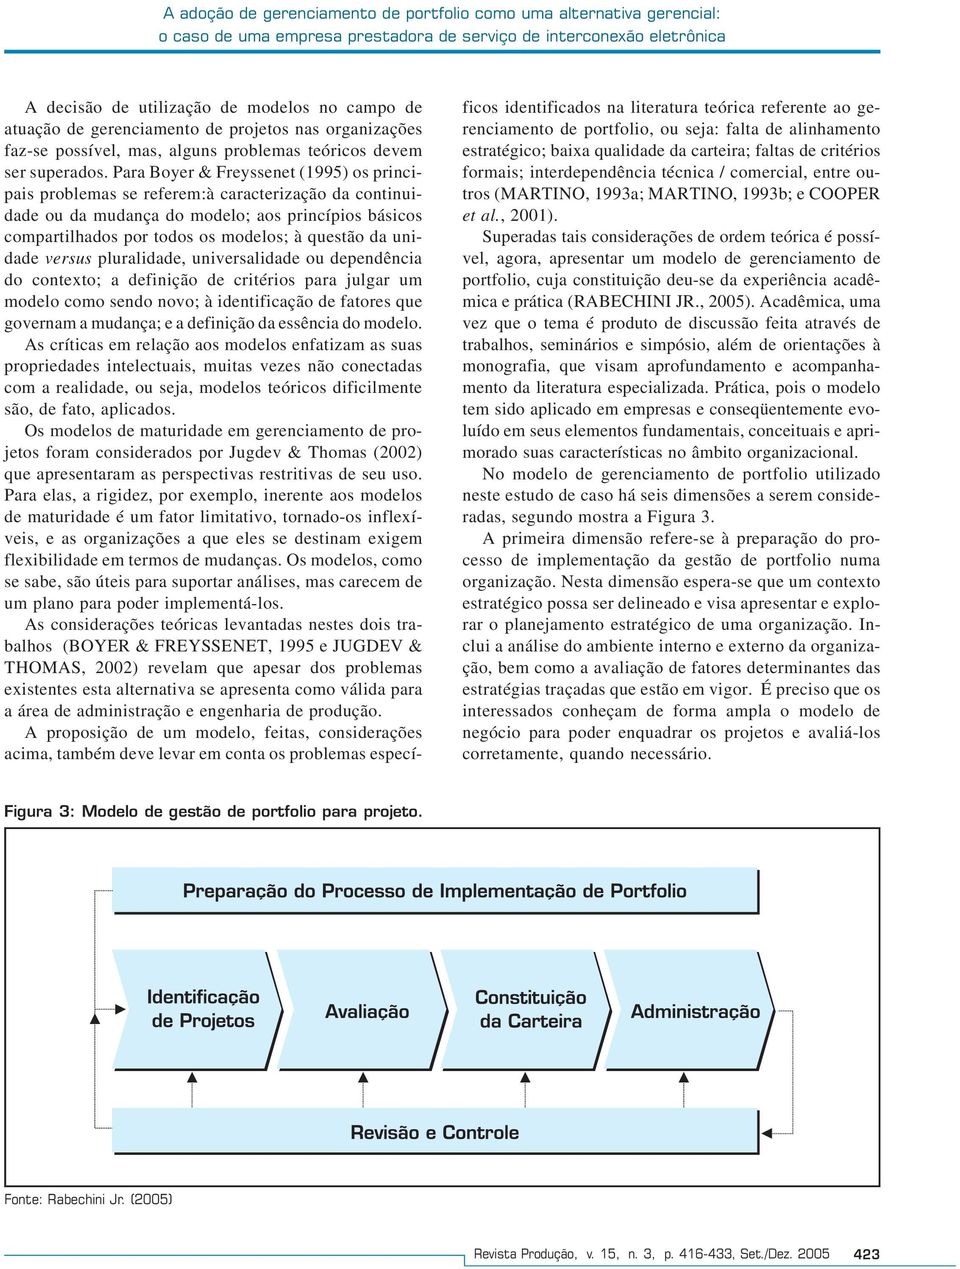 Para Boyer & Freyssenet (199) os principais problemas se referem:à caracterização da continuidade ou da mudança do modelo; aos princípios básicos compartilhados por todos os modelos; à questão da